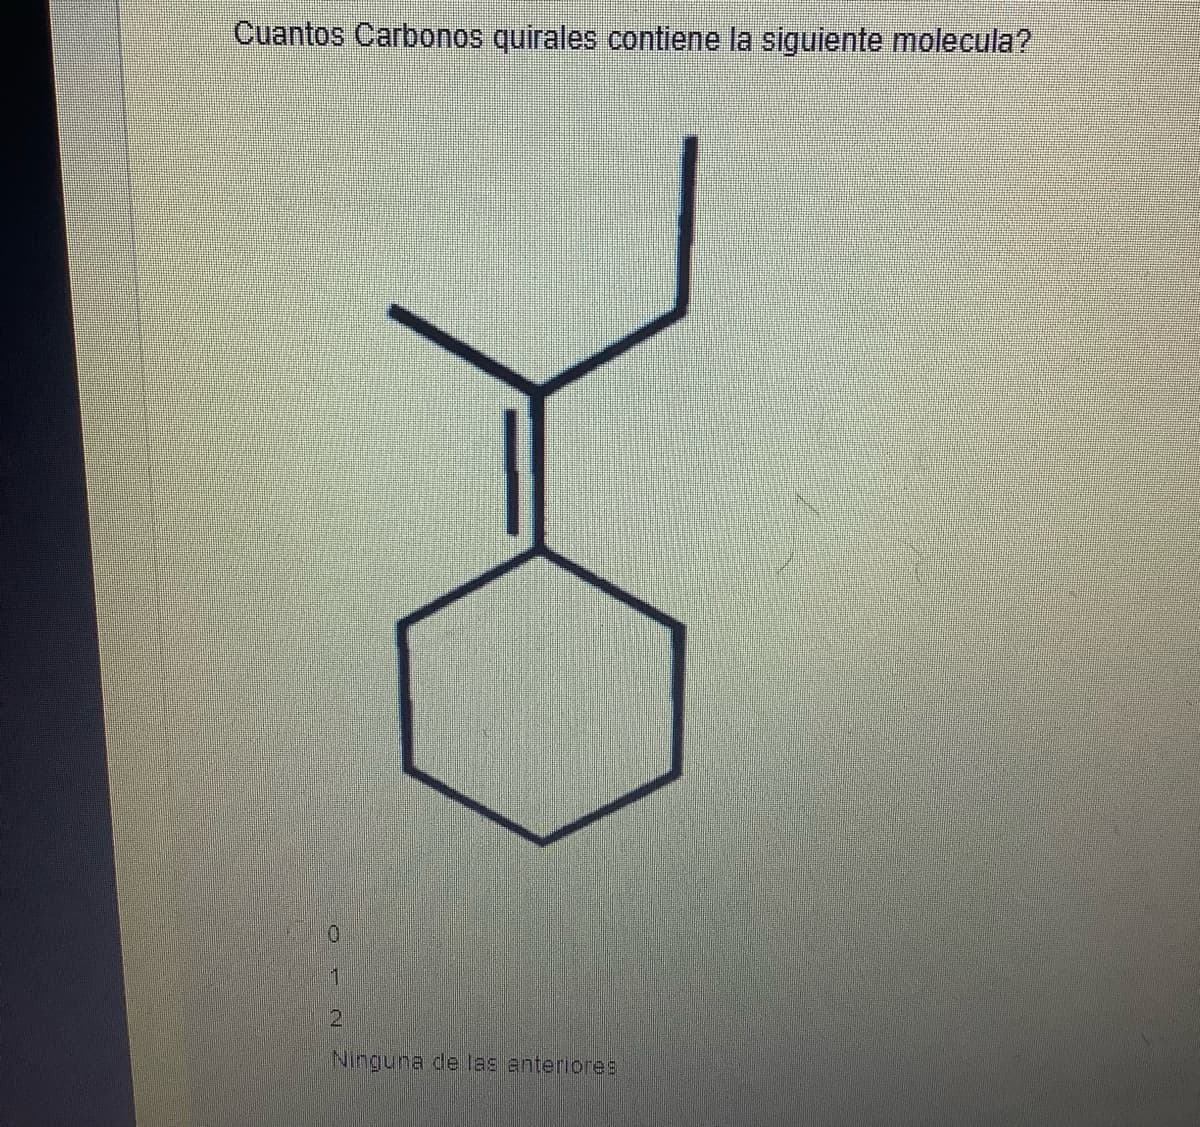 Cuantos Carbonos quirales contiene la siguiente molecula?
0
1
2
Ninguna de las anteriores